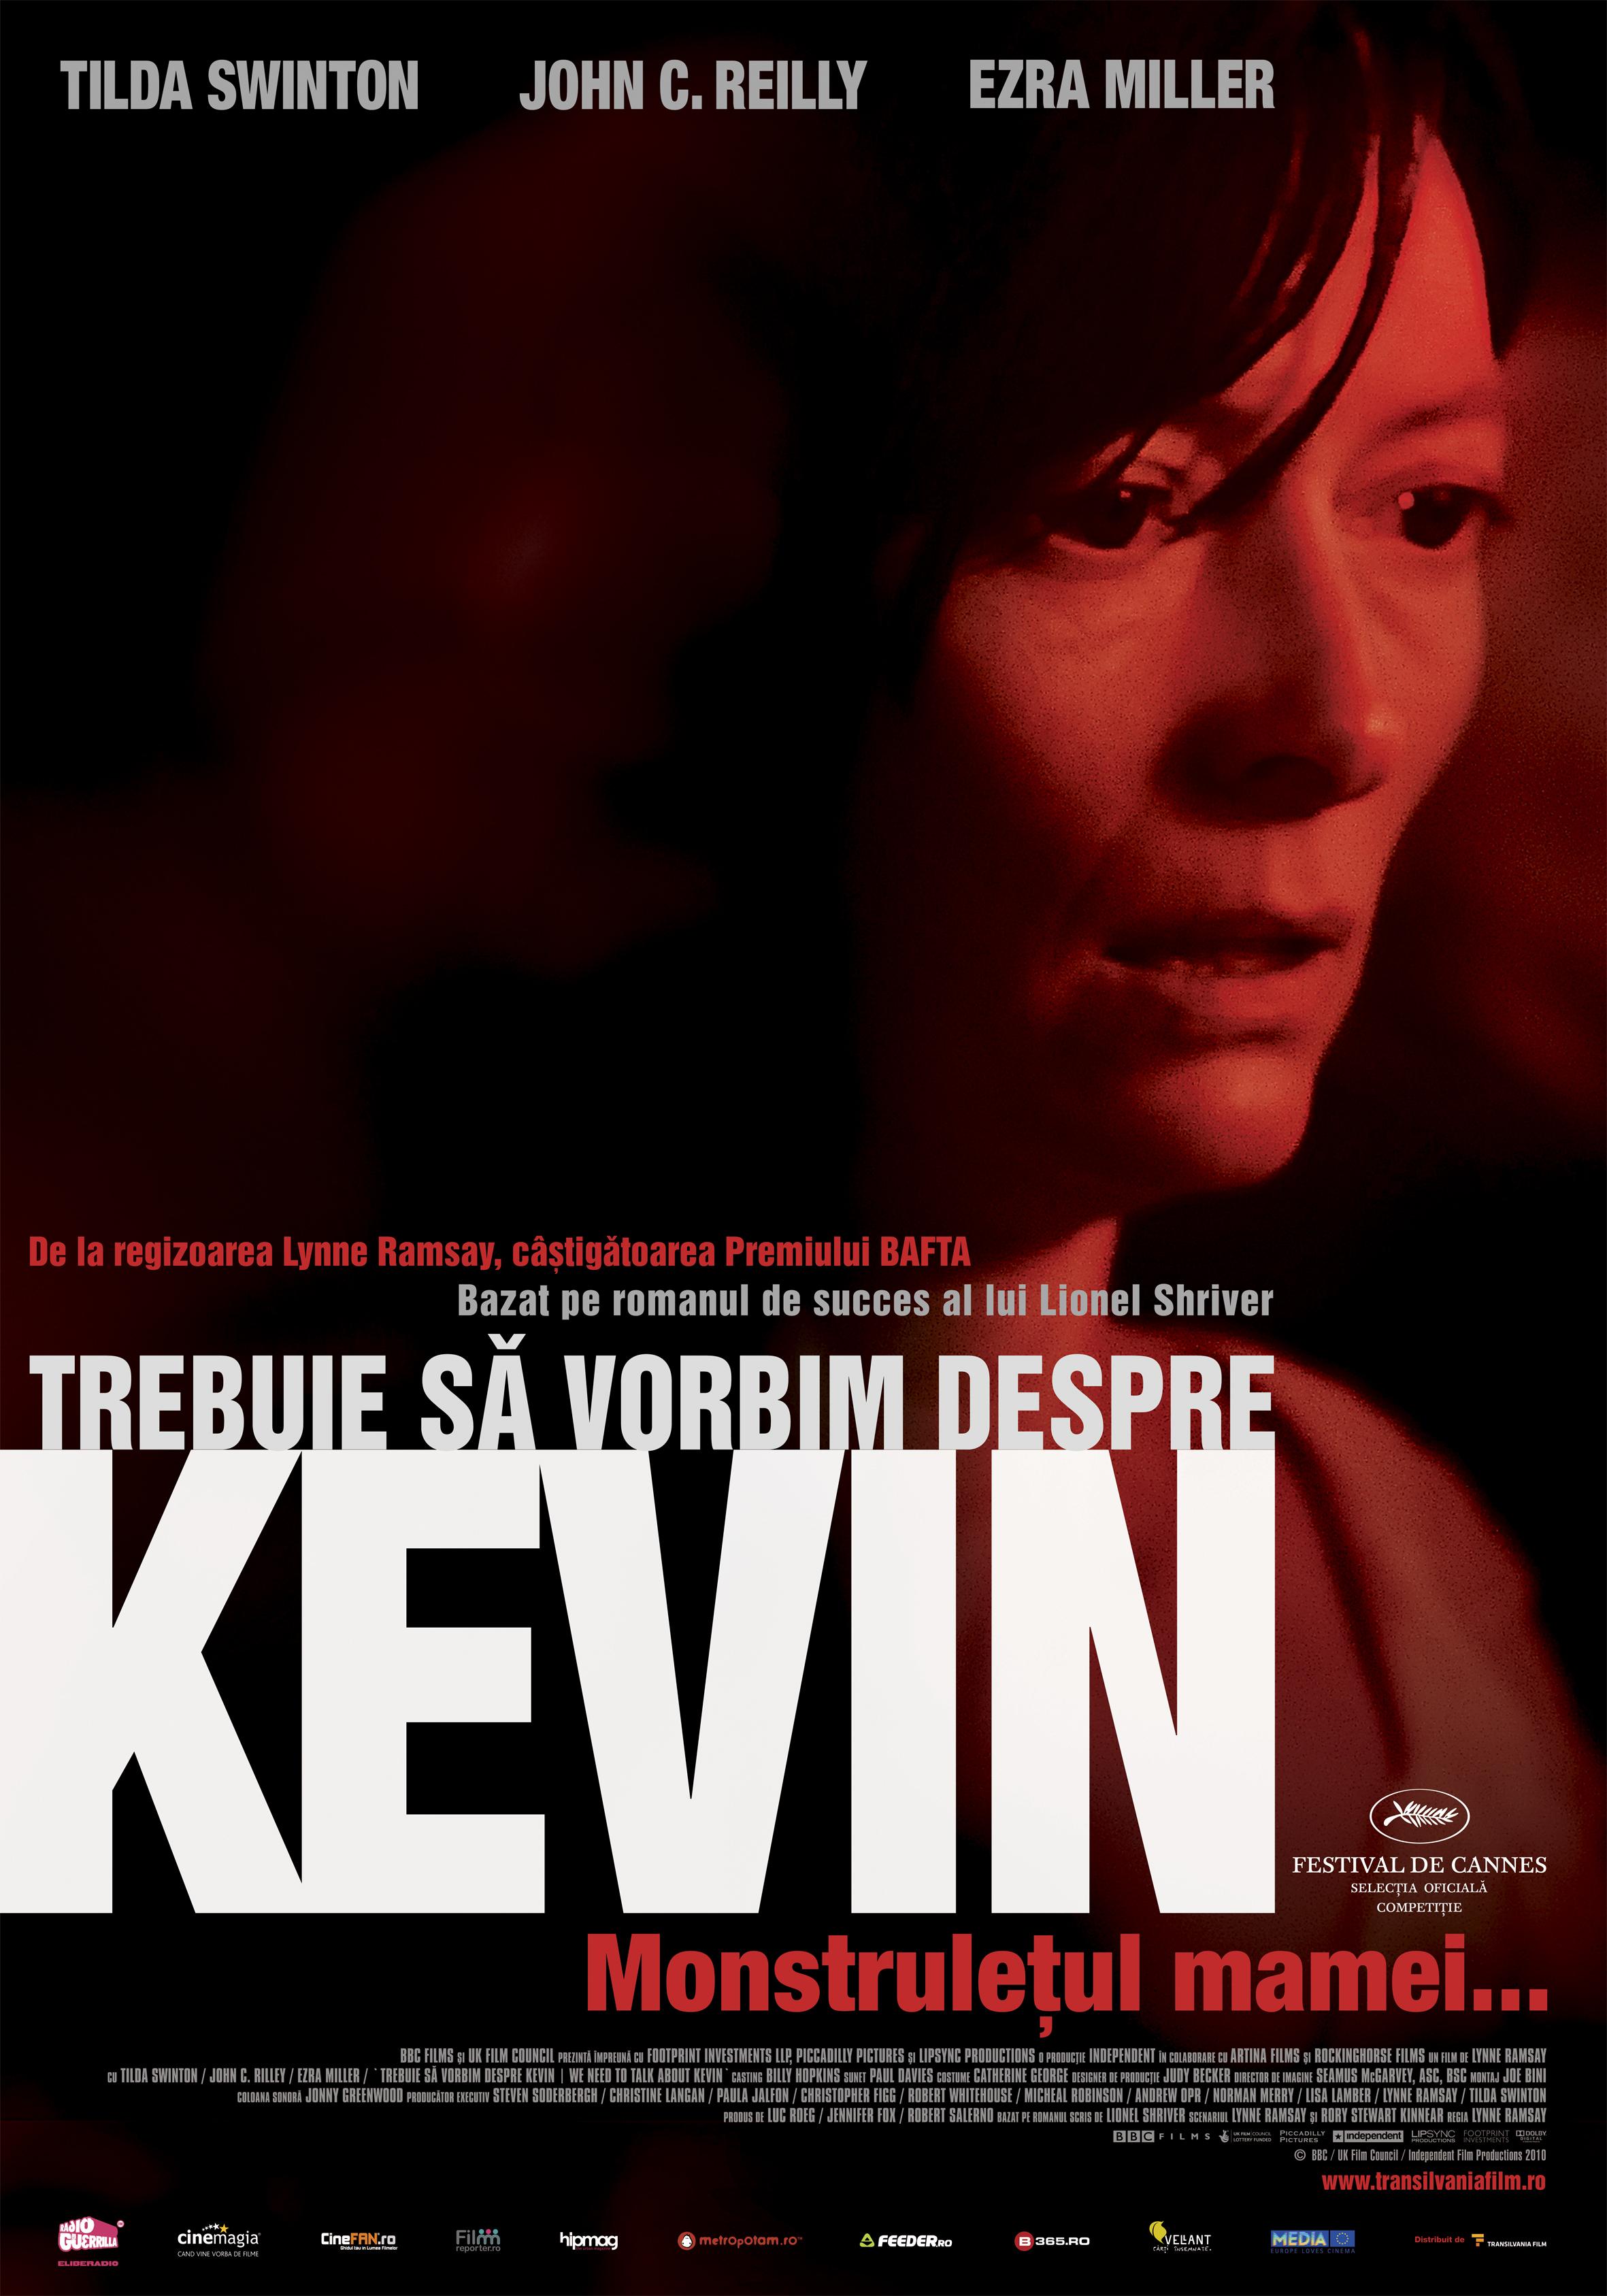 Постер фильма Что-то не так с Кевином | We Need to Talk About Kevin